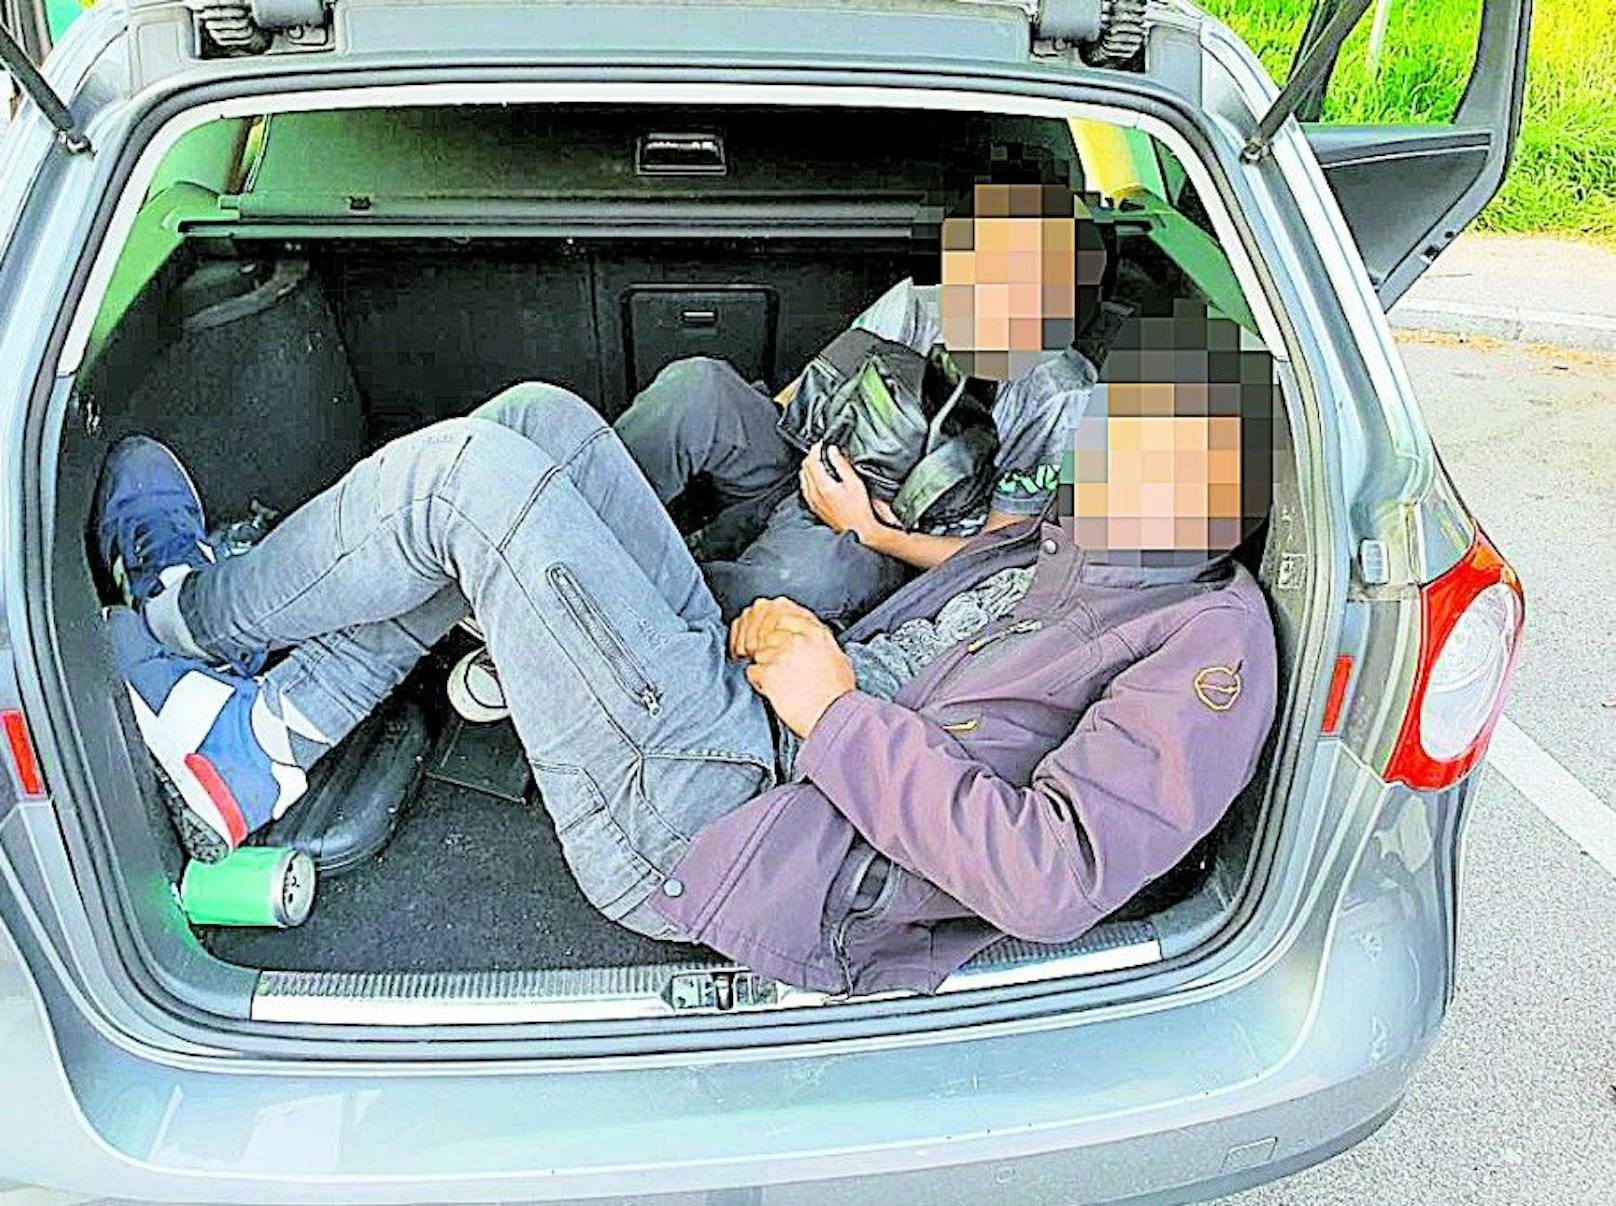 Die beiden Brüder wurden von der Polizei eingepfercht im Kofferraum gefunden.